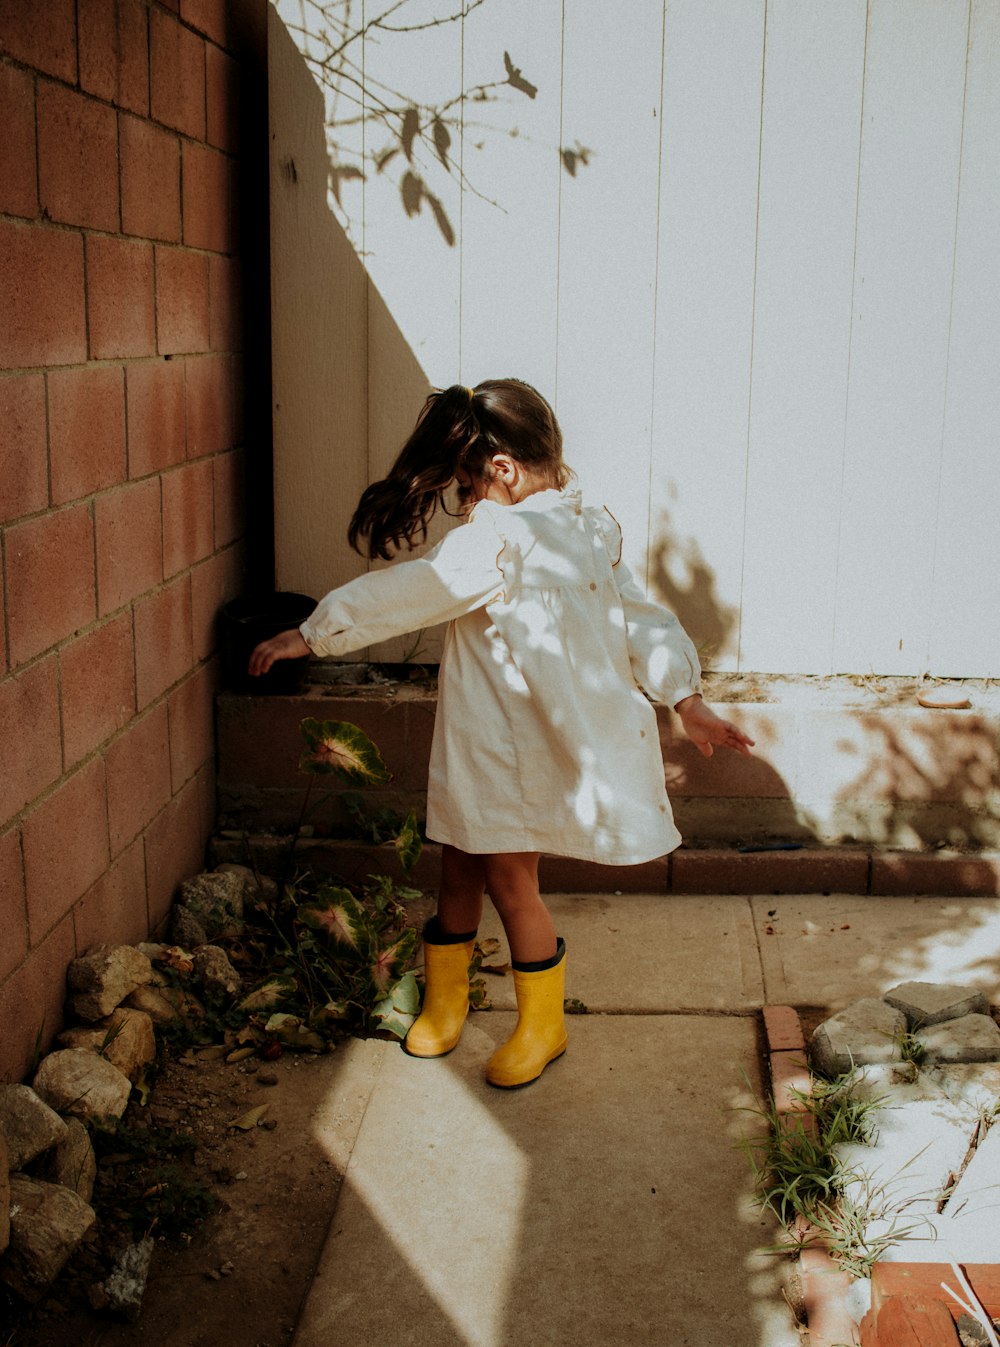 茶色のレンガの壁のそばに立つ白衣と黄色いブーツの女の子